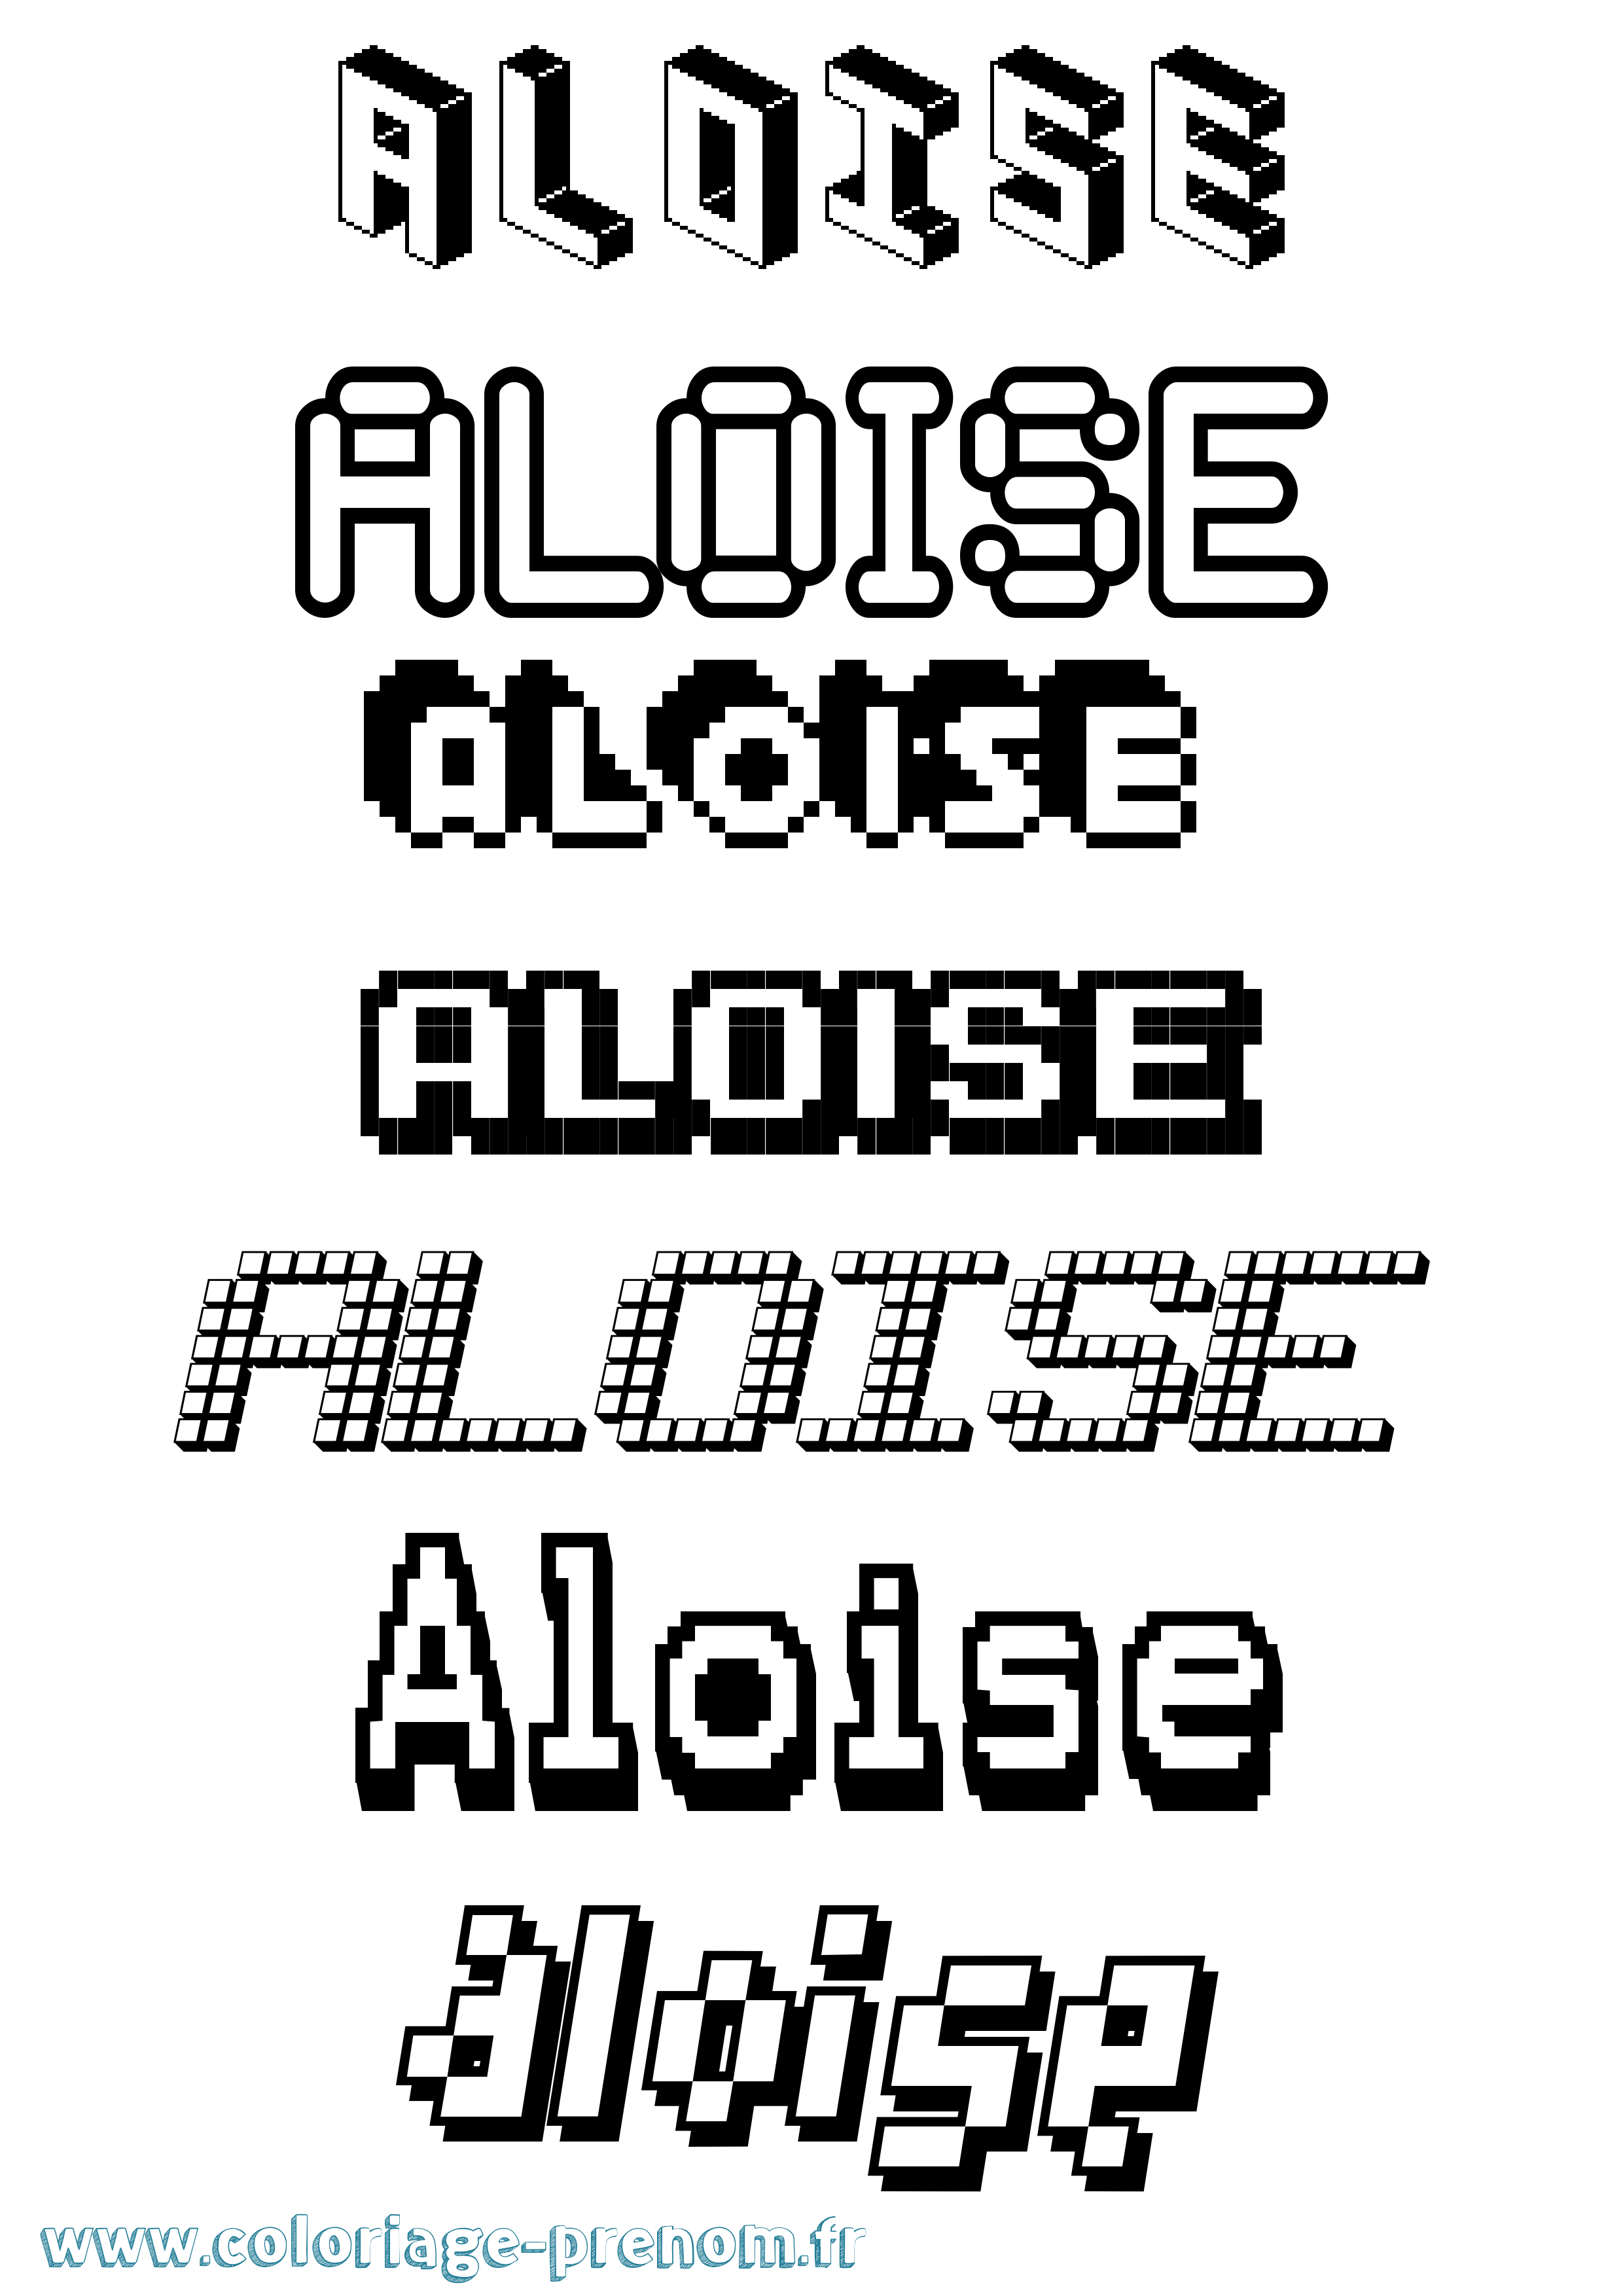 Coloriage prénom Aloise Pixel